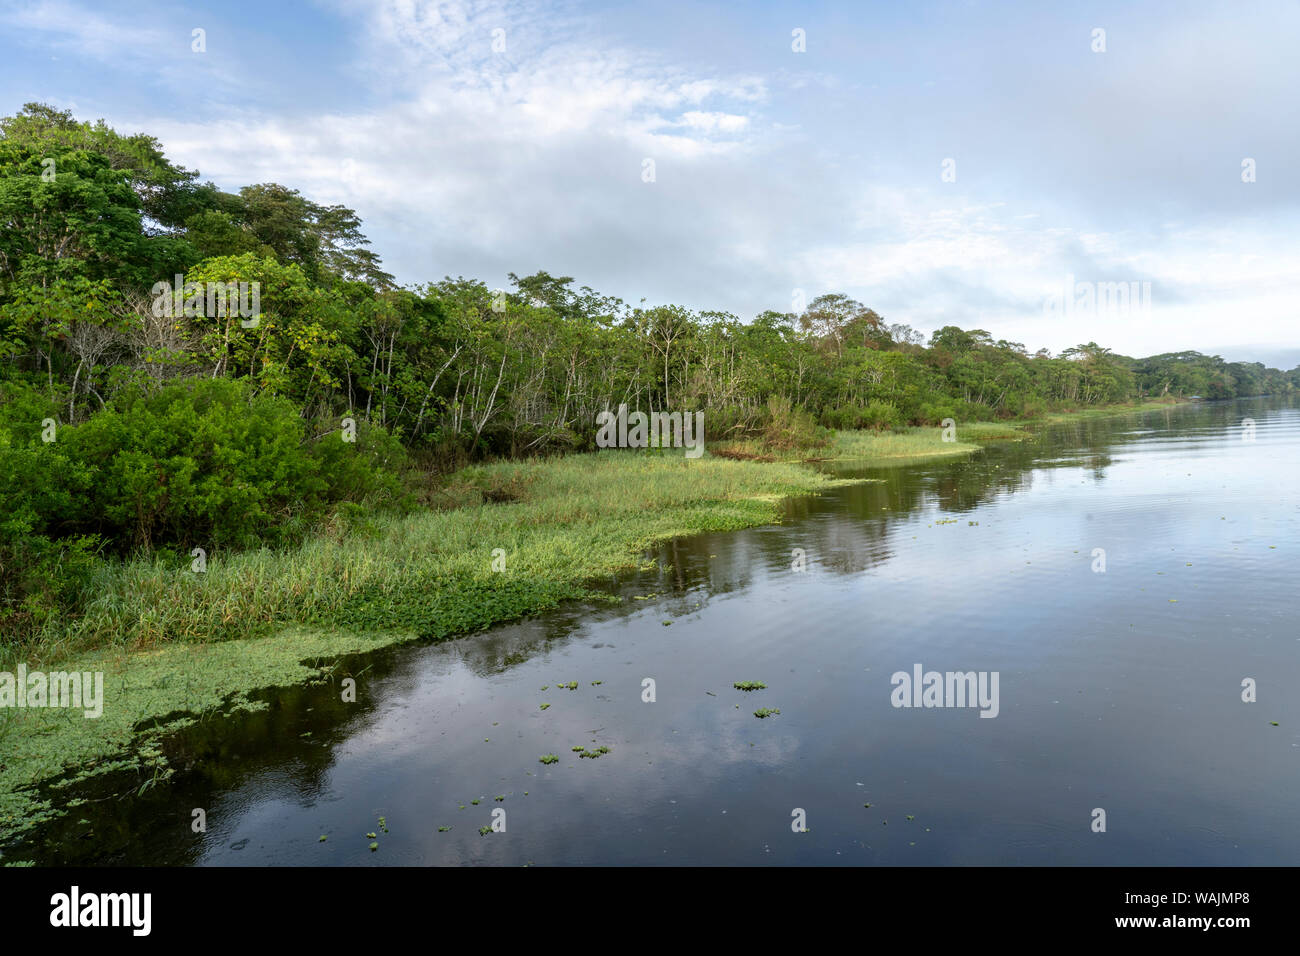 Amazon Nationalpark, Peru. Maranon Fluß Regenwald Landschaft, mit dem Ufer mit invasiver Wasser Salat gefüttert. Stockfoto